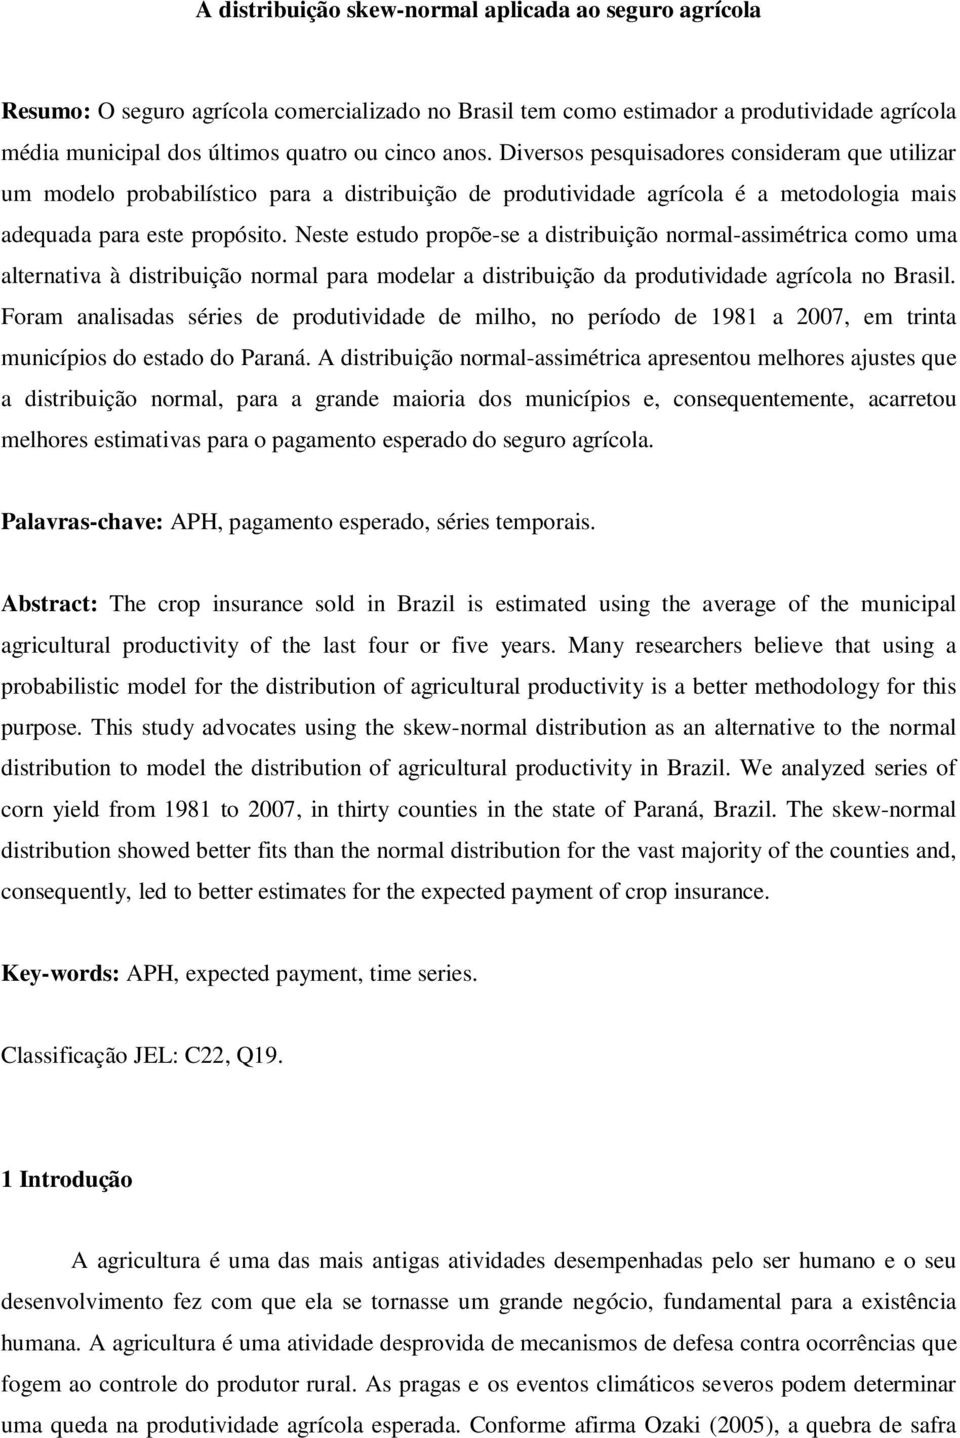 Neste estudo propõe-se a distribuição normal-assimétrica como uma alternativa à distribuição normal para modelar a distribuição da produtividade agrícola no Brasil.